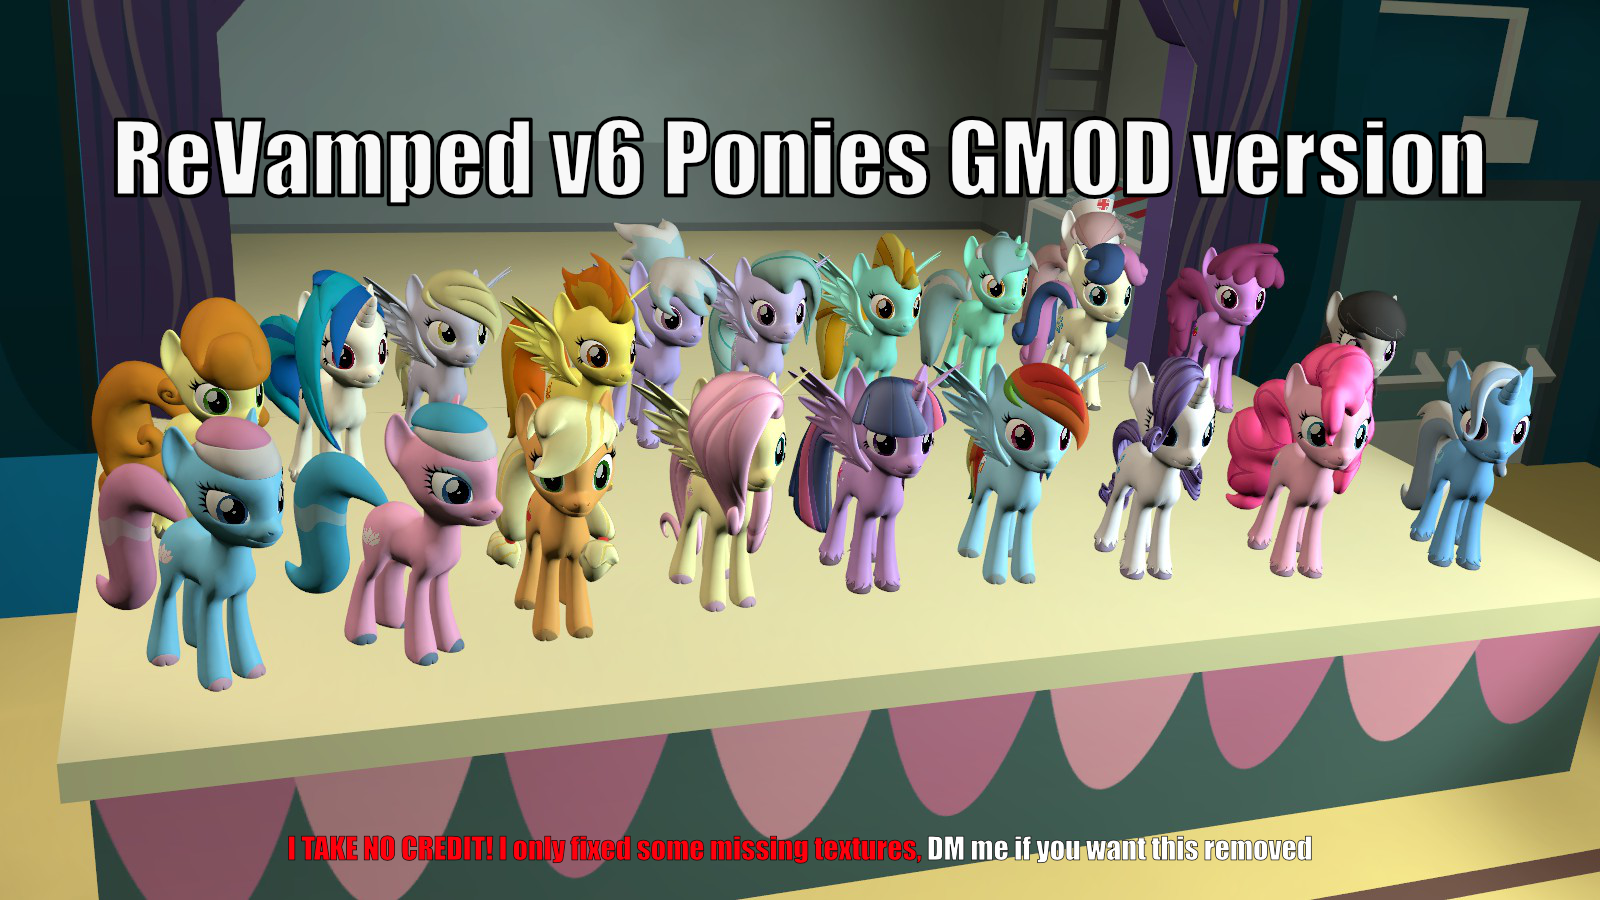 SFM/PMV] Garry's Mod VS Ponies - Noclipping to Garry's mod 